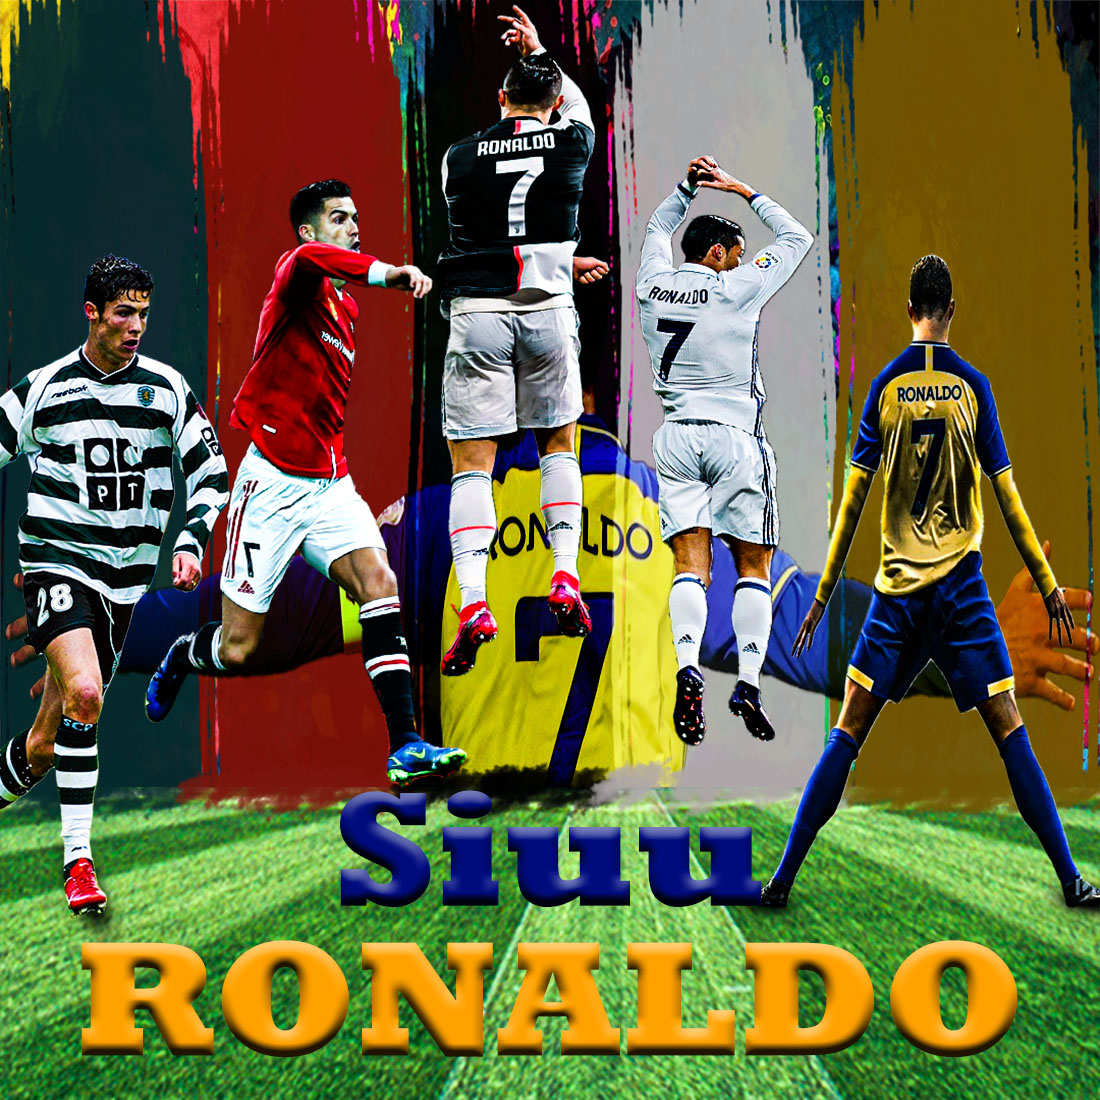 Christiano Ronaldo Siuu cover image.